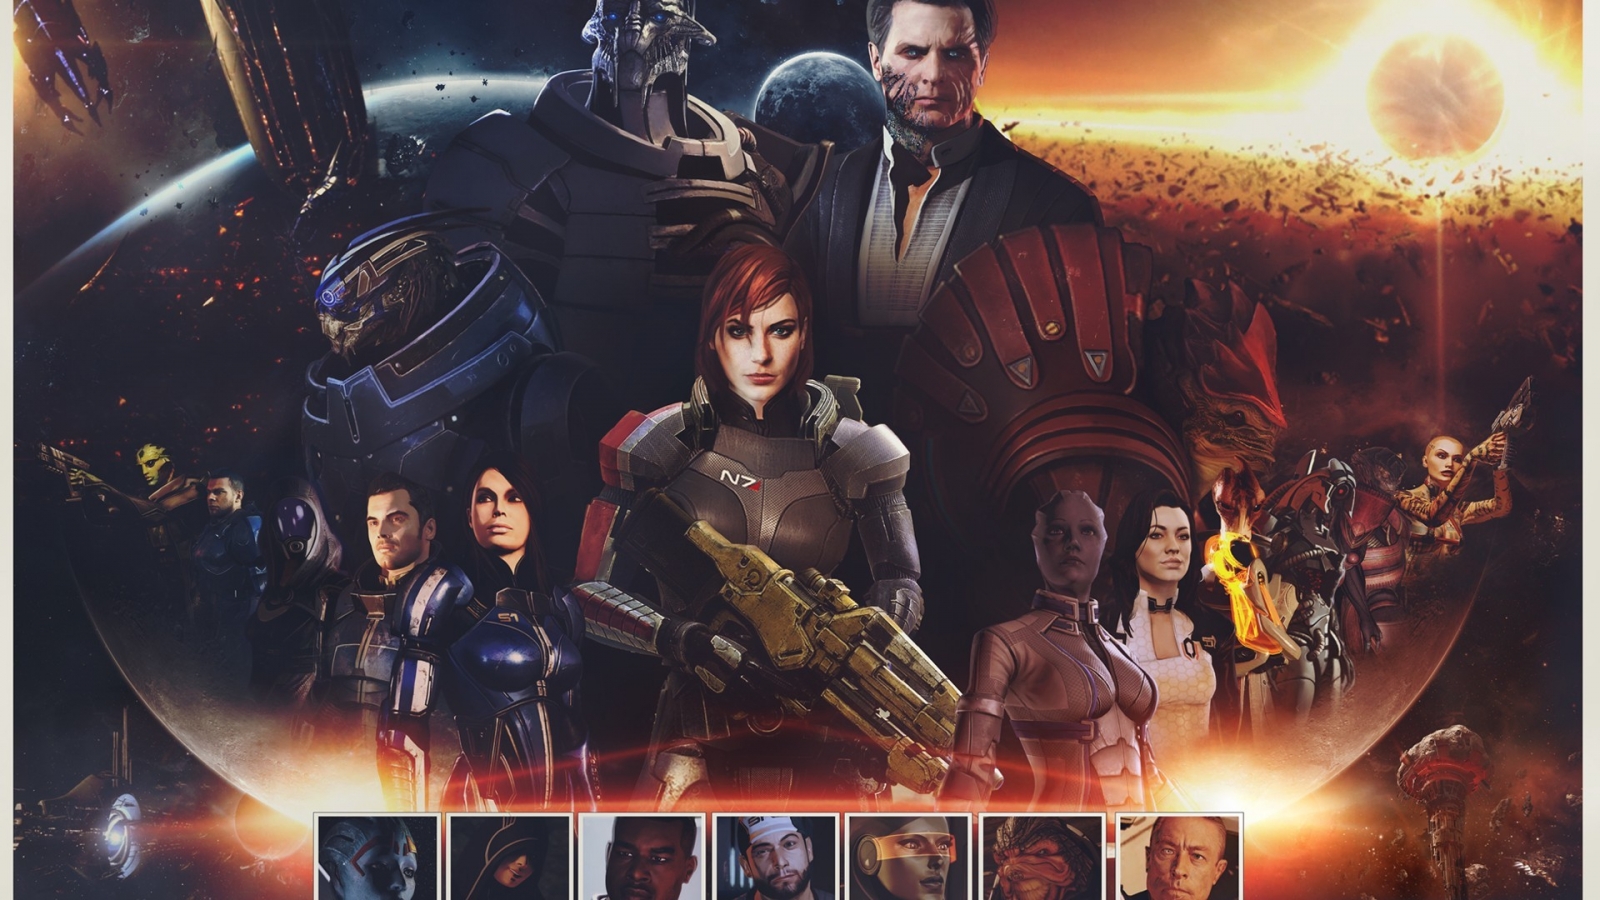 Mass Effect Zaeed Massani for 1600 x 900 HDTV resolution